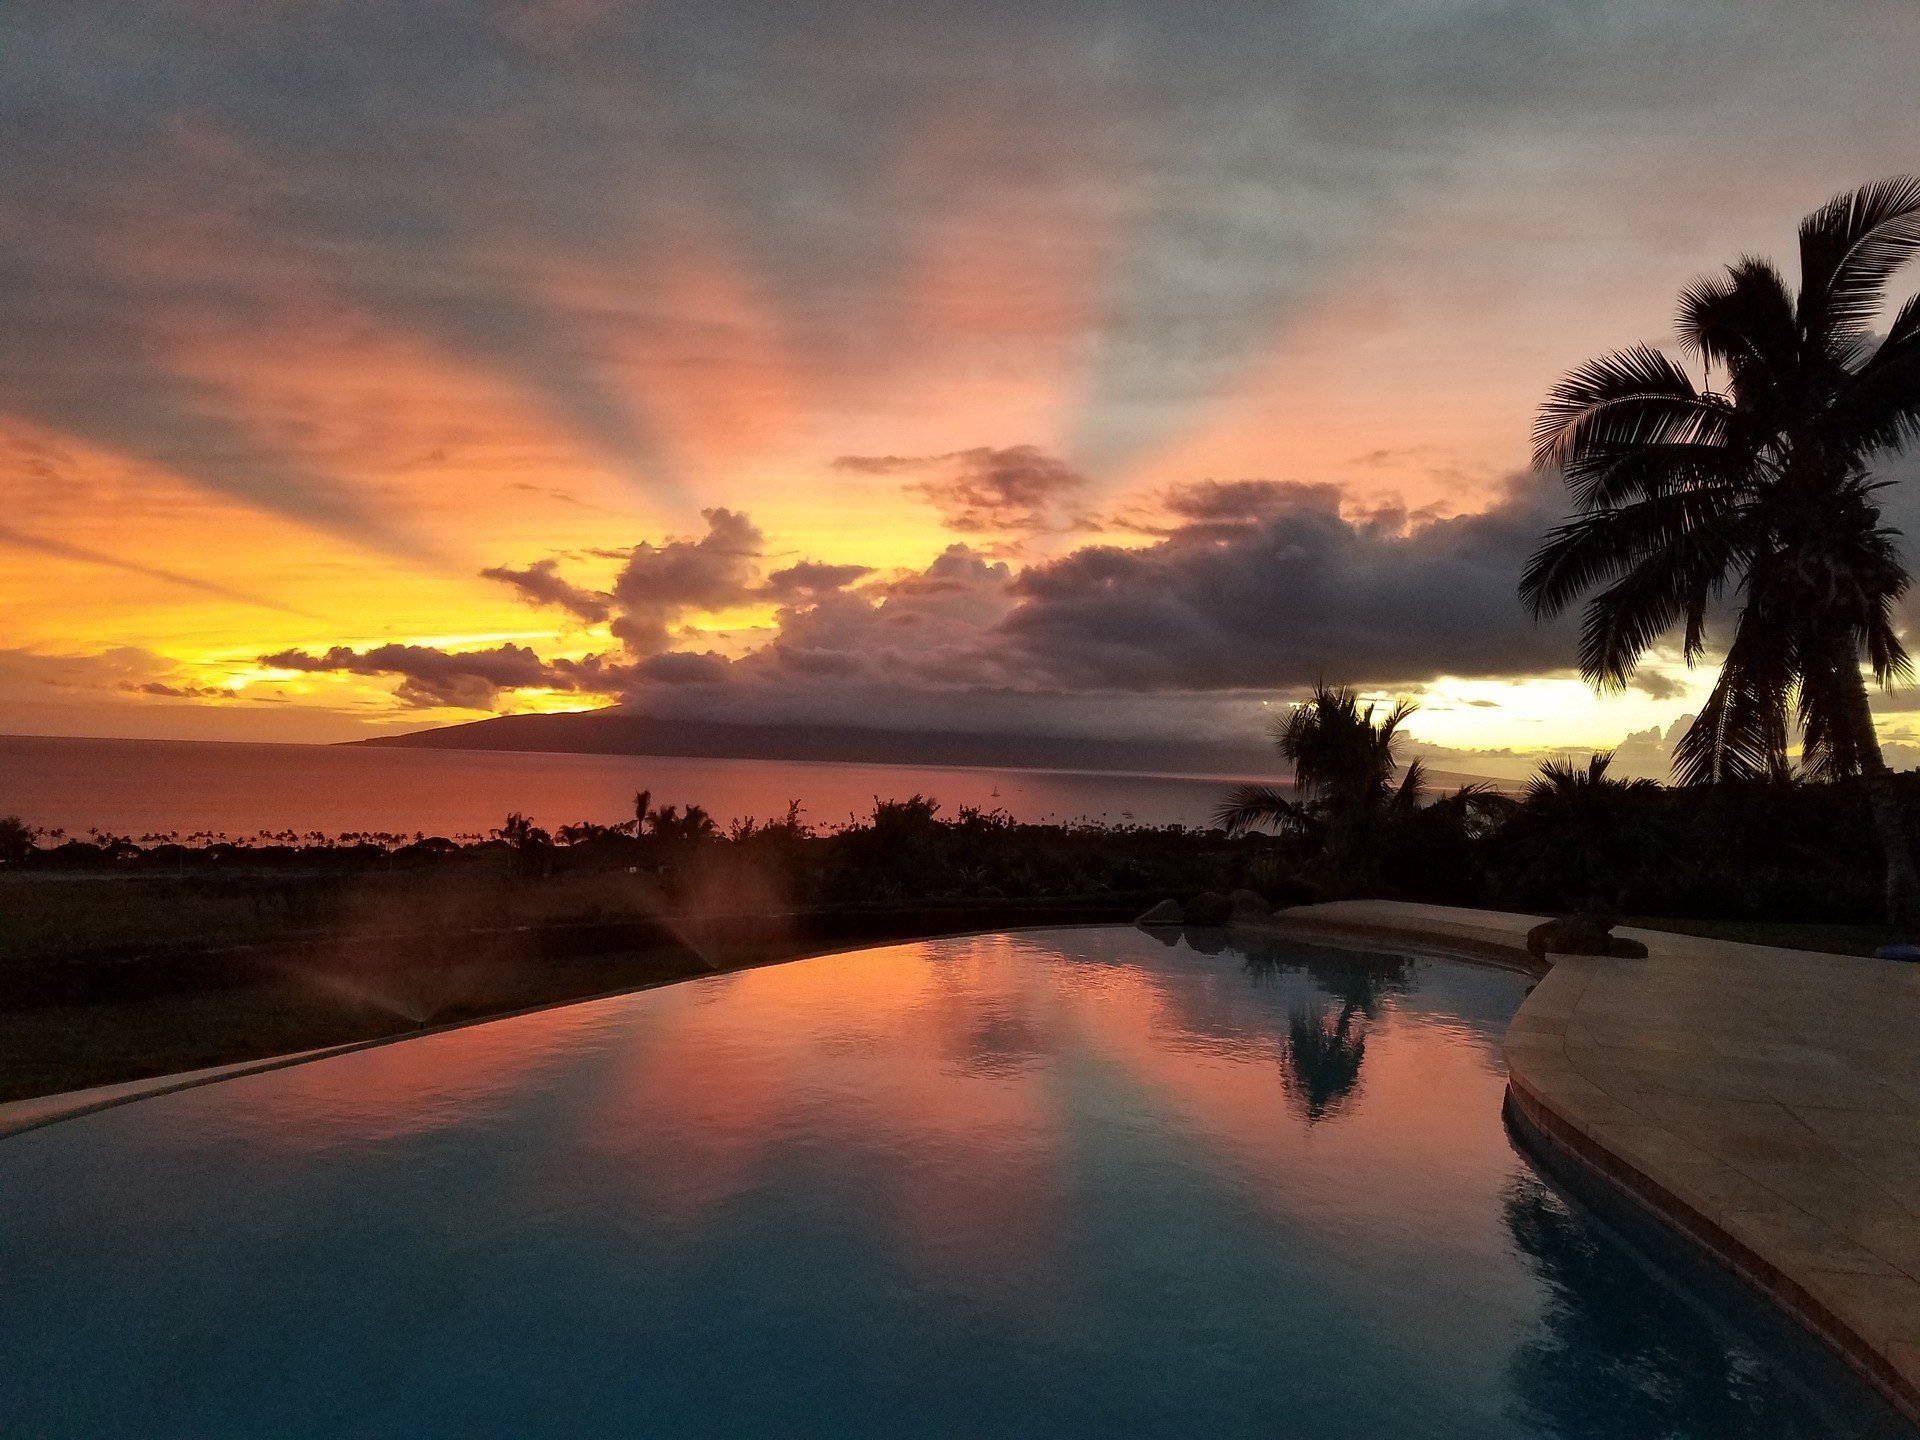 Sonnenuntergang in Lahain - wo ich zum ersten Mal in Maui übernachten soll